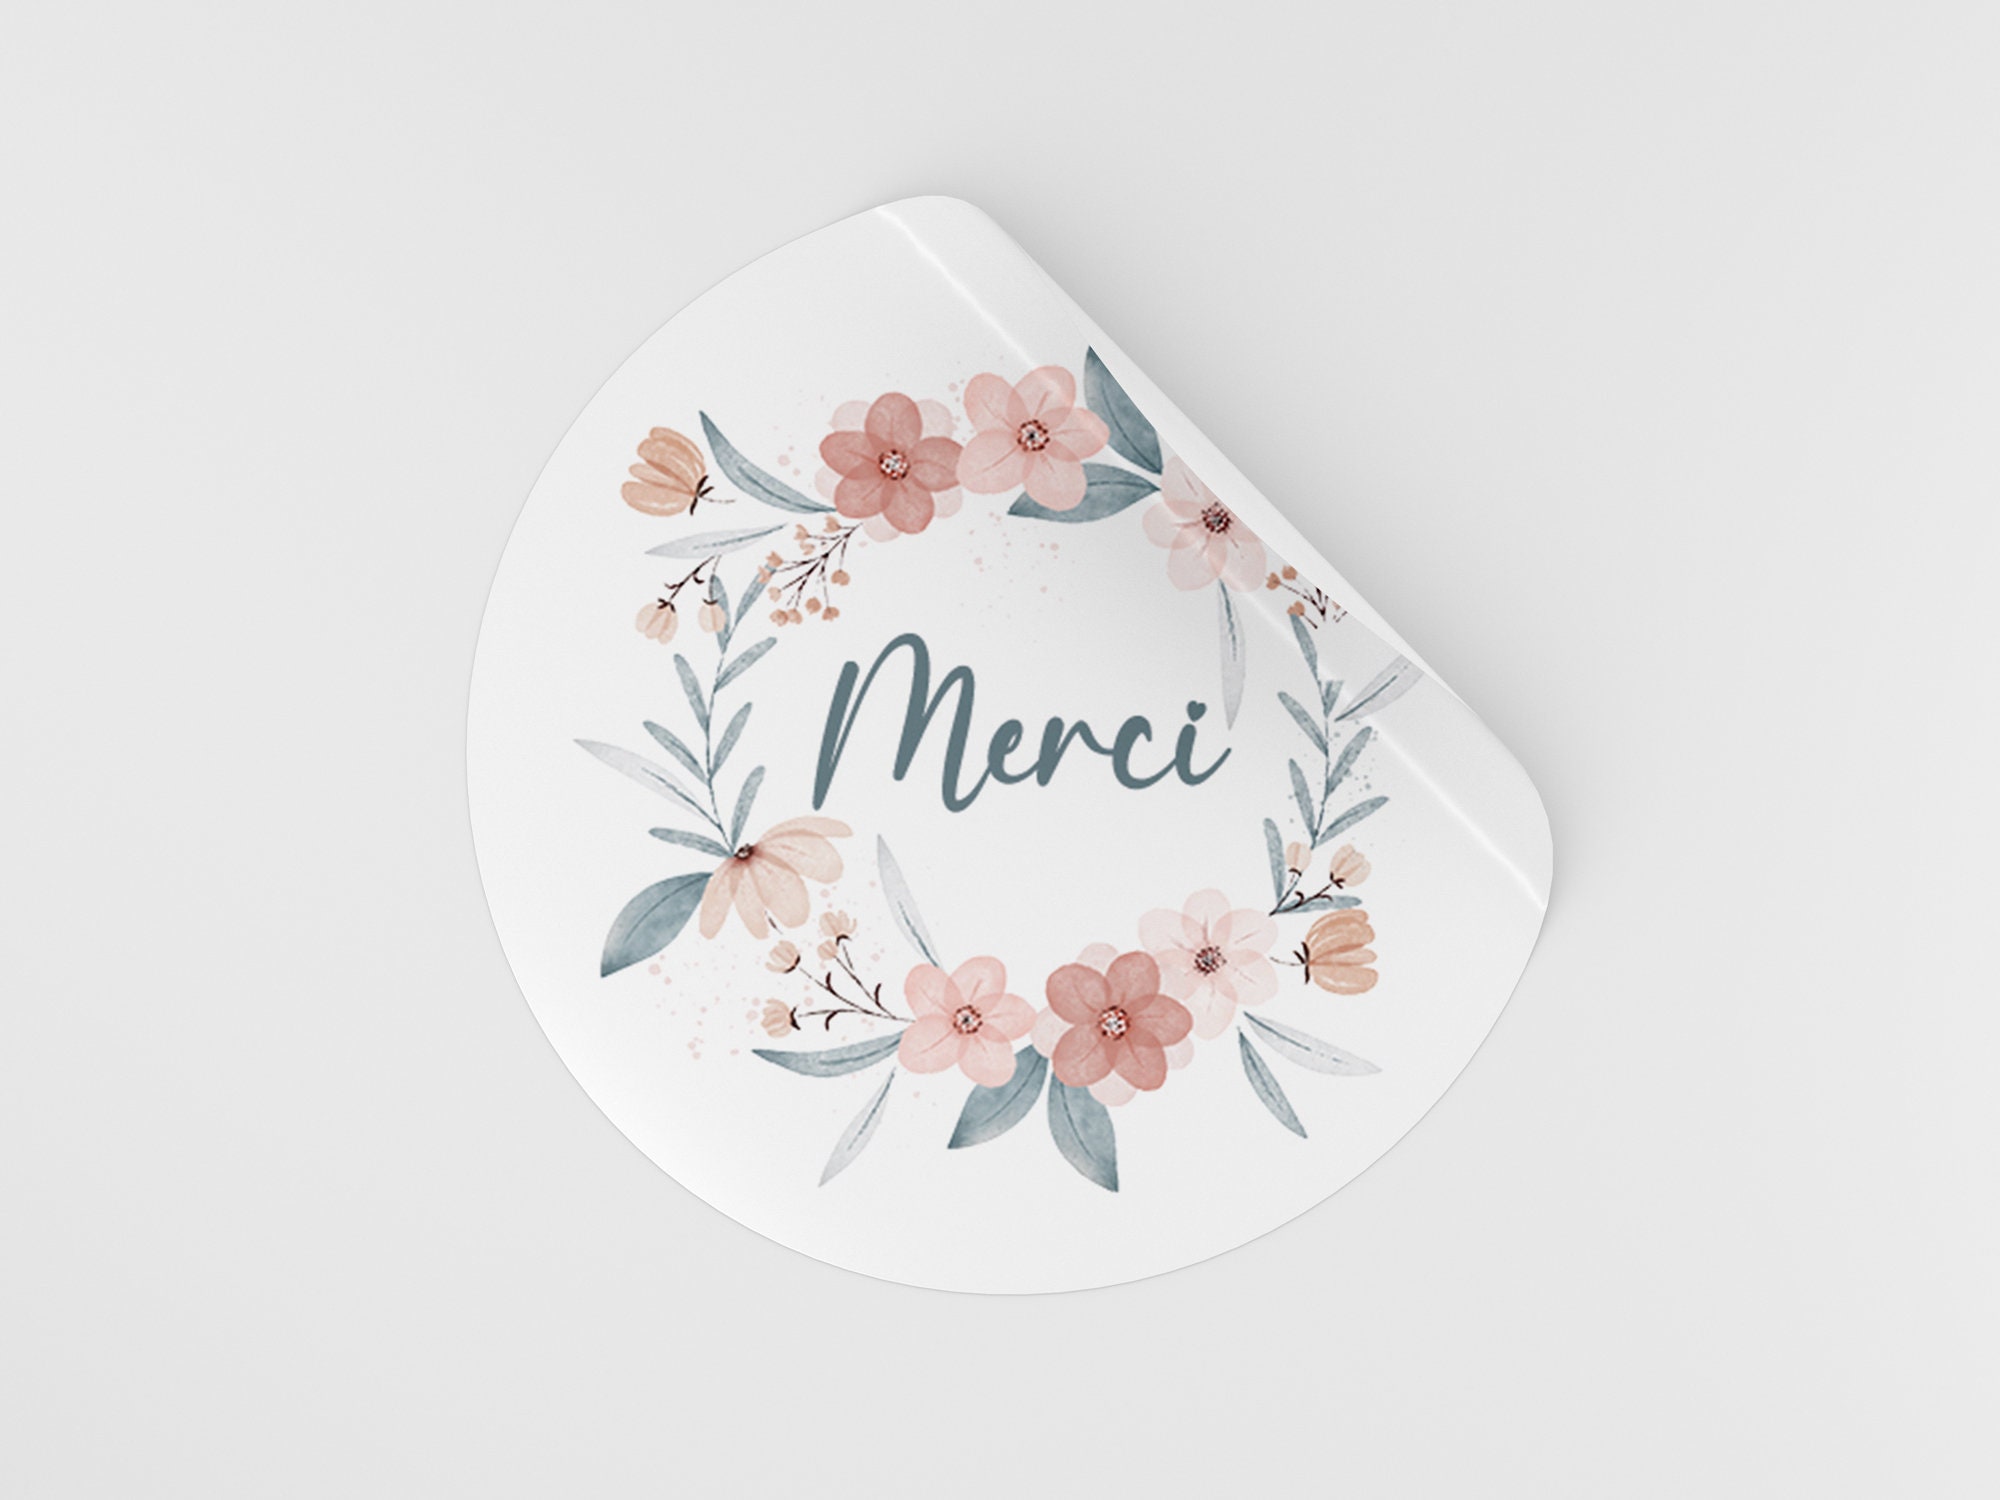 Sticker Personnalisé avec prénom couronne de fleurs d'automne - TenStickers